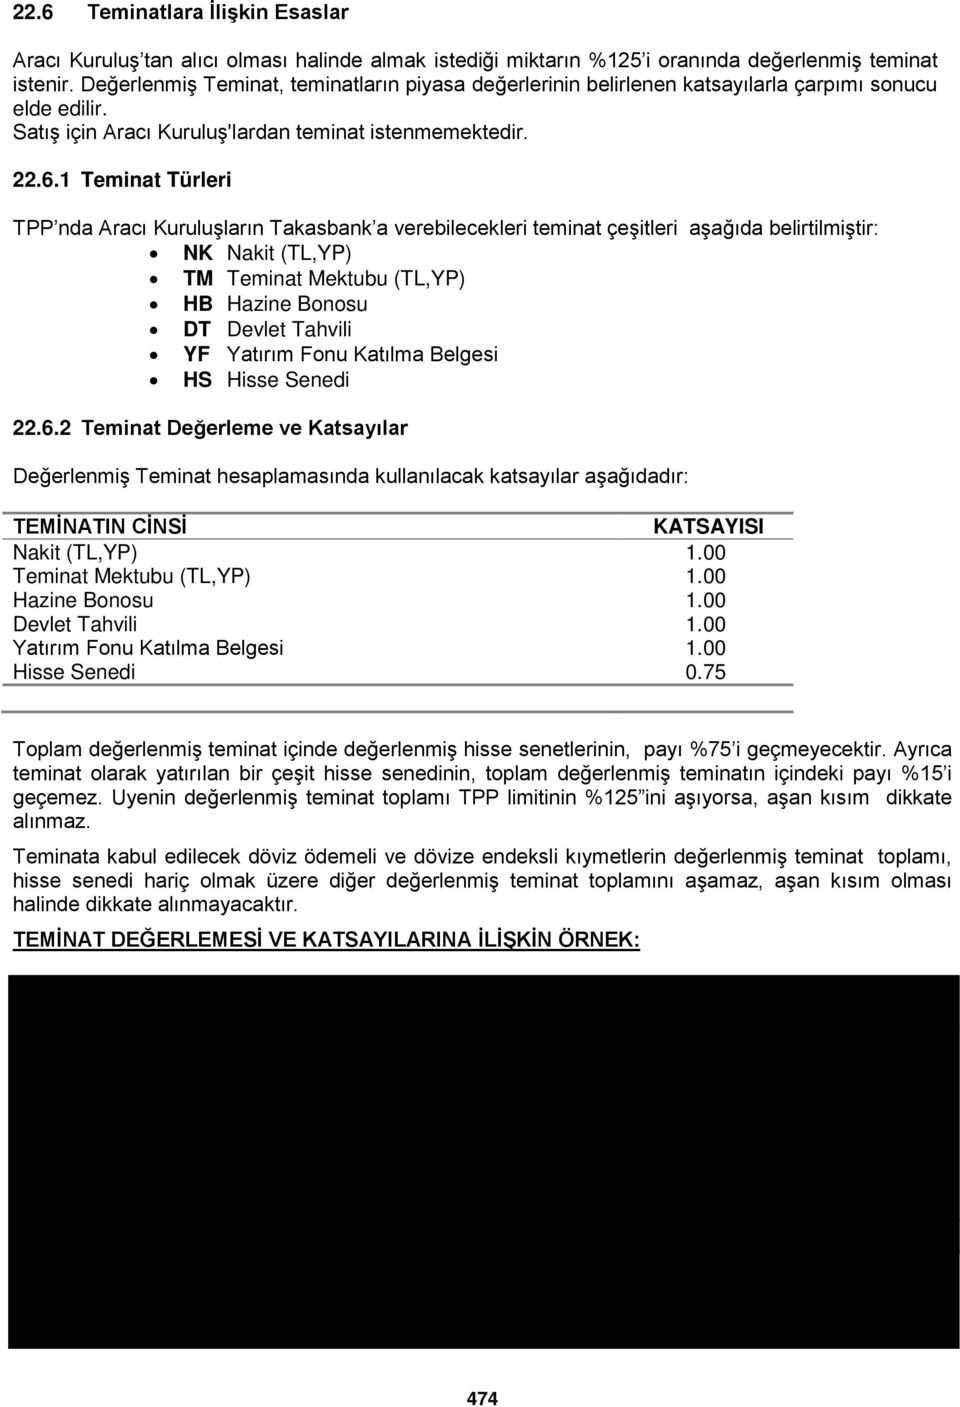 1 Teminat Türleri TPP nda Aracı Kuruluşların Takasbank a verebilecekleri teminat çeşitleri aşağıda belirtilmiştir: NK Nakit (TL,YP) TM Teminat Mektubu (TL,YP) HB Hazine Bonosu DT Devlet Tahvili YF